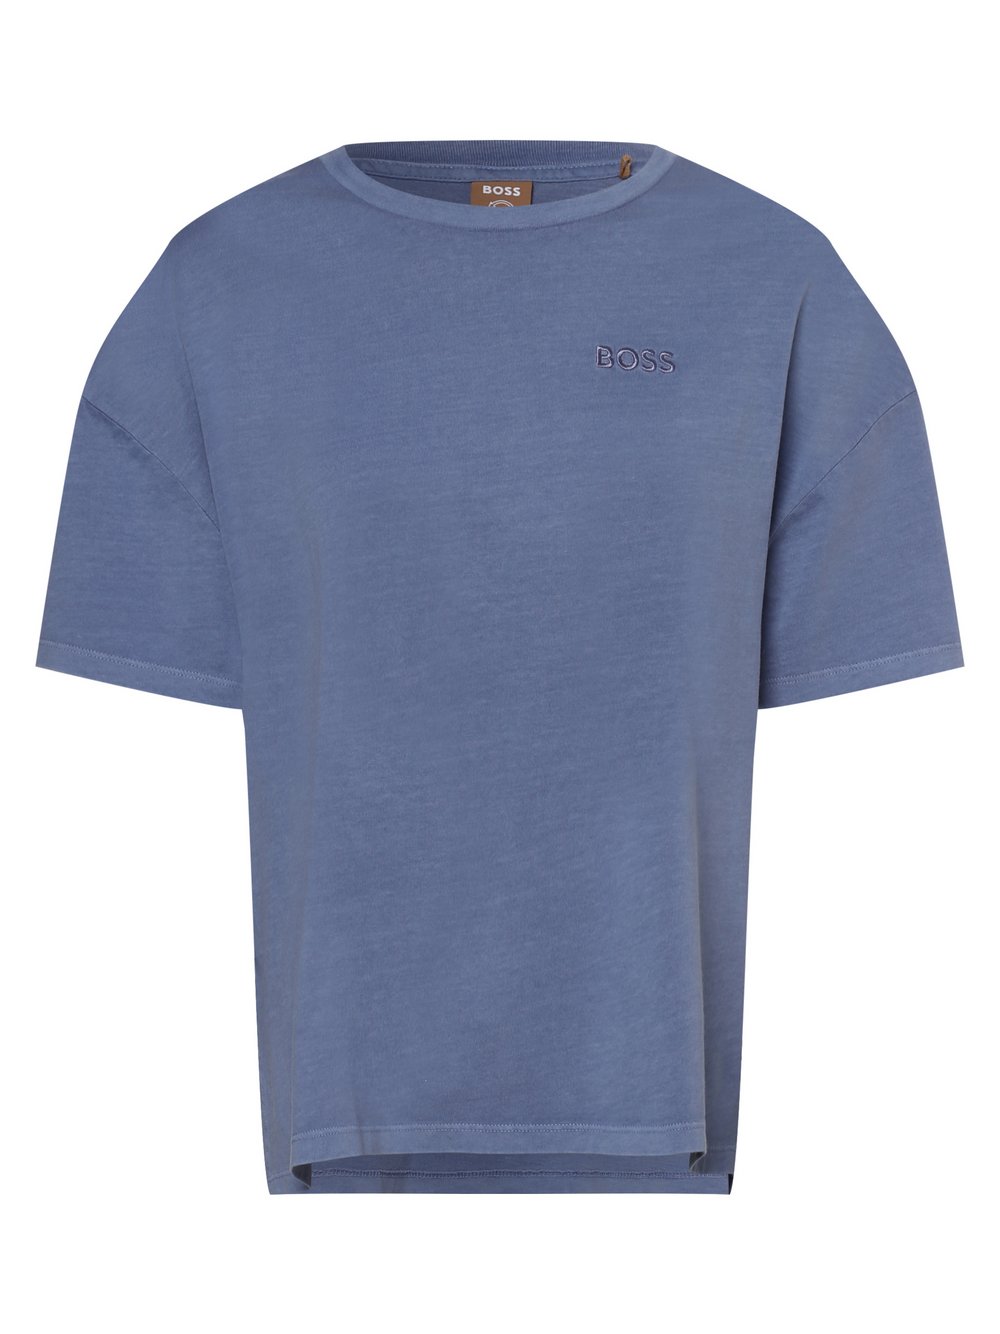 BOSS - T-shirt damski – C_Elowa, niebieski